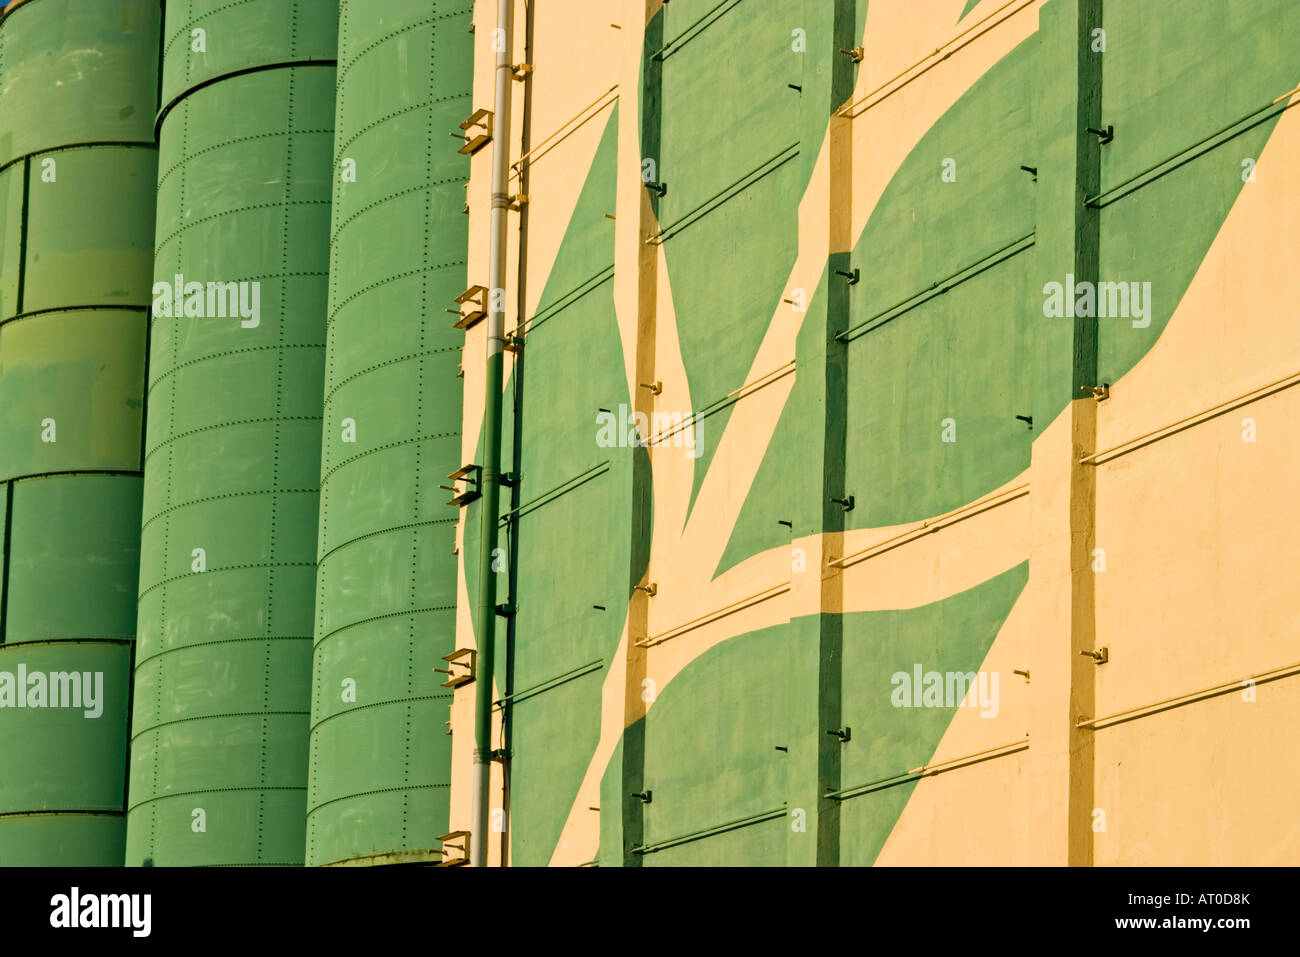 Detalle de Rank Hovis molino y silos de grano Trafford Park, Manchester Foto de stock